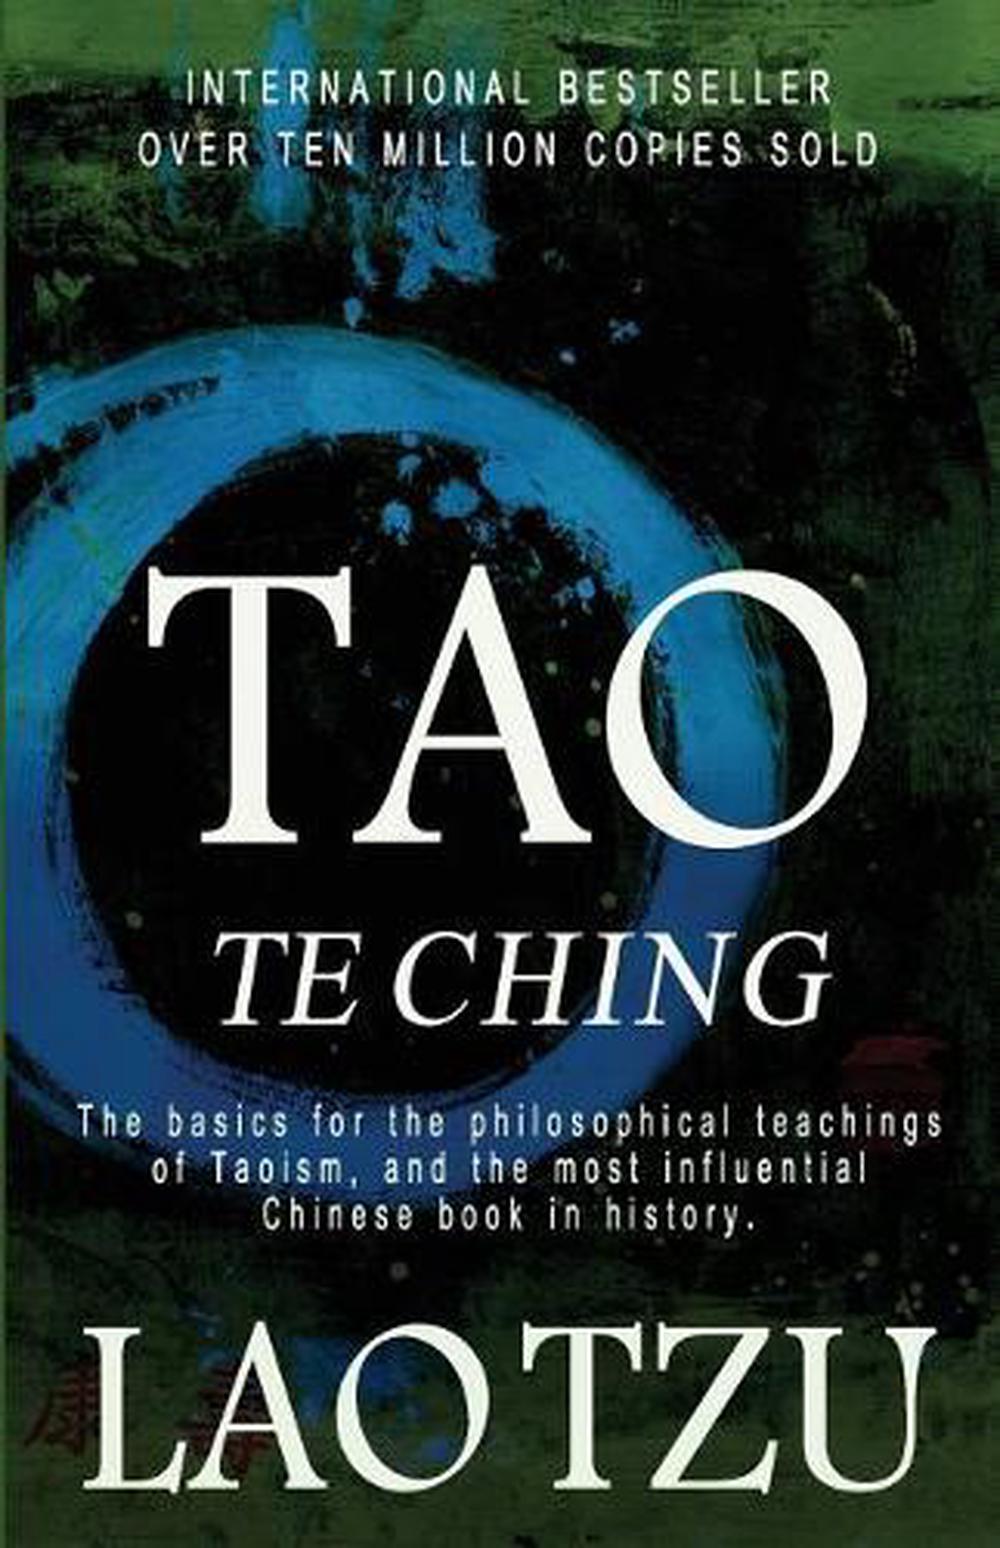 Tao Te Ching by Yuhui Liang